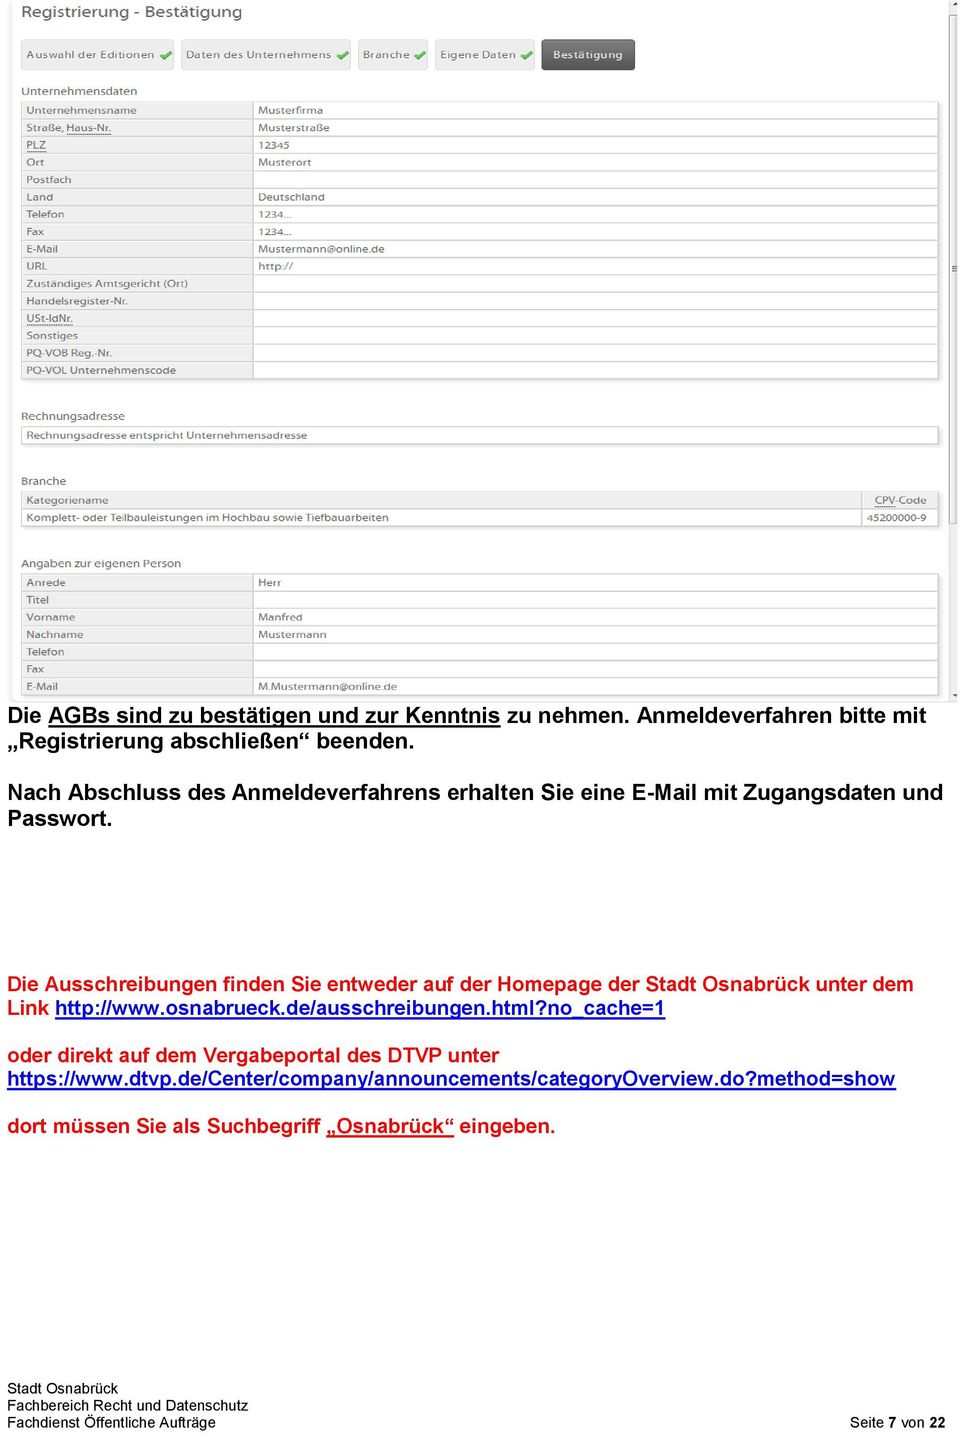 Die Ausschreibungen finden Sie entweder auf der Homepage der unter dem Link http://www.osnabrueck.de/ausschreibungen.html?